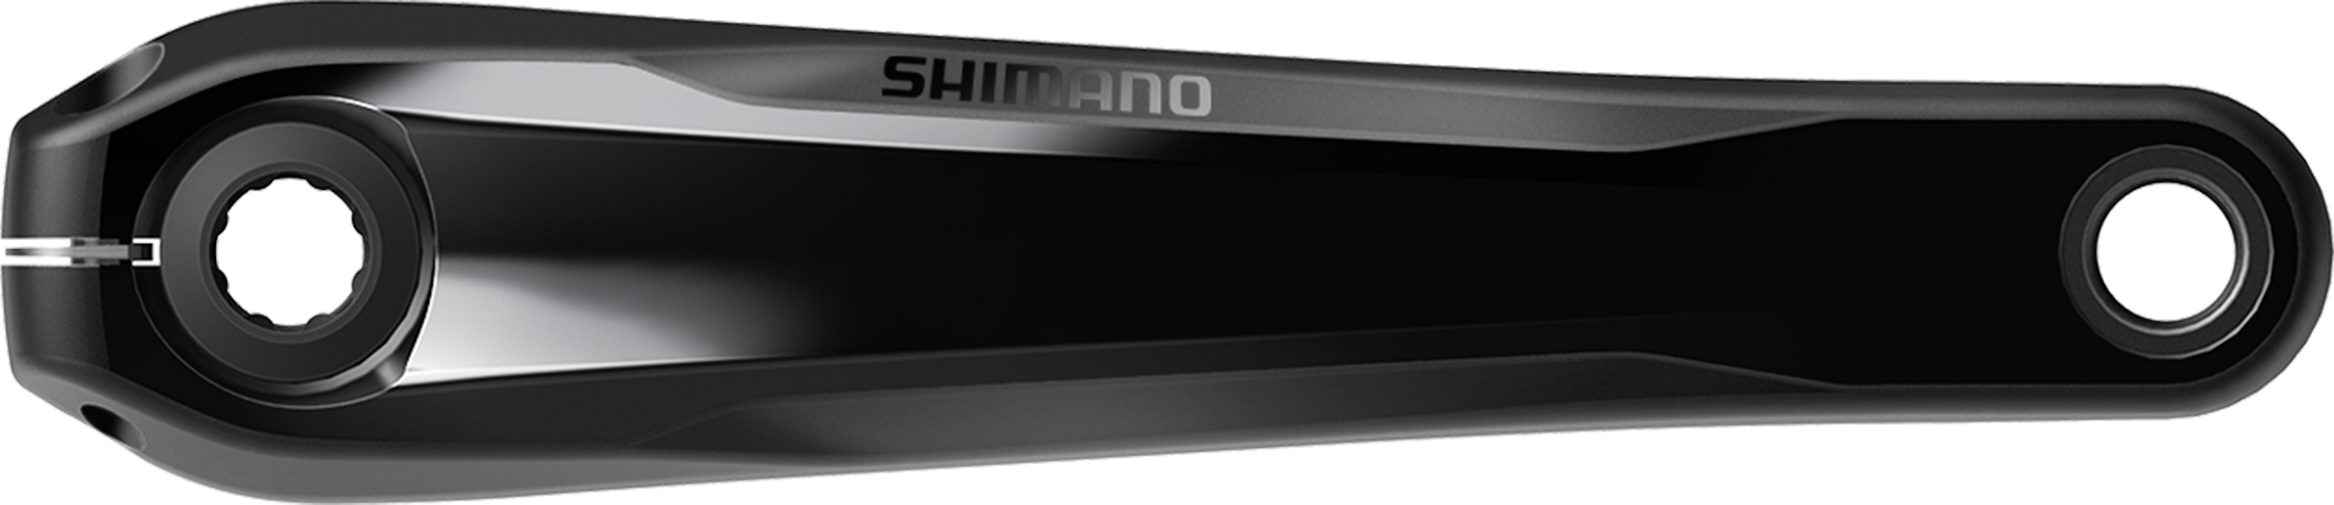 SHIMANO STEPS kliky FC-EM900 jednopřevodník 170 mm bez přev. bez krytu bal